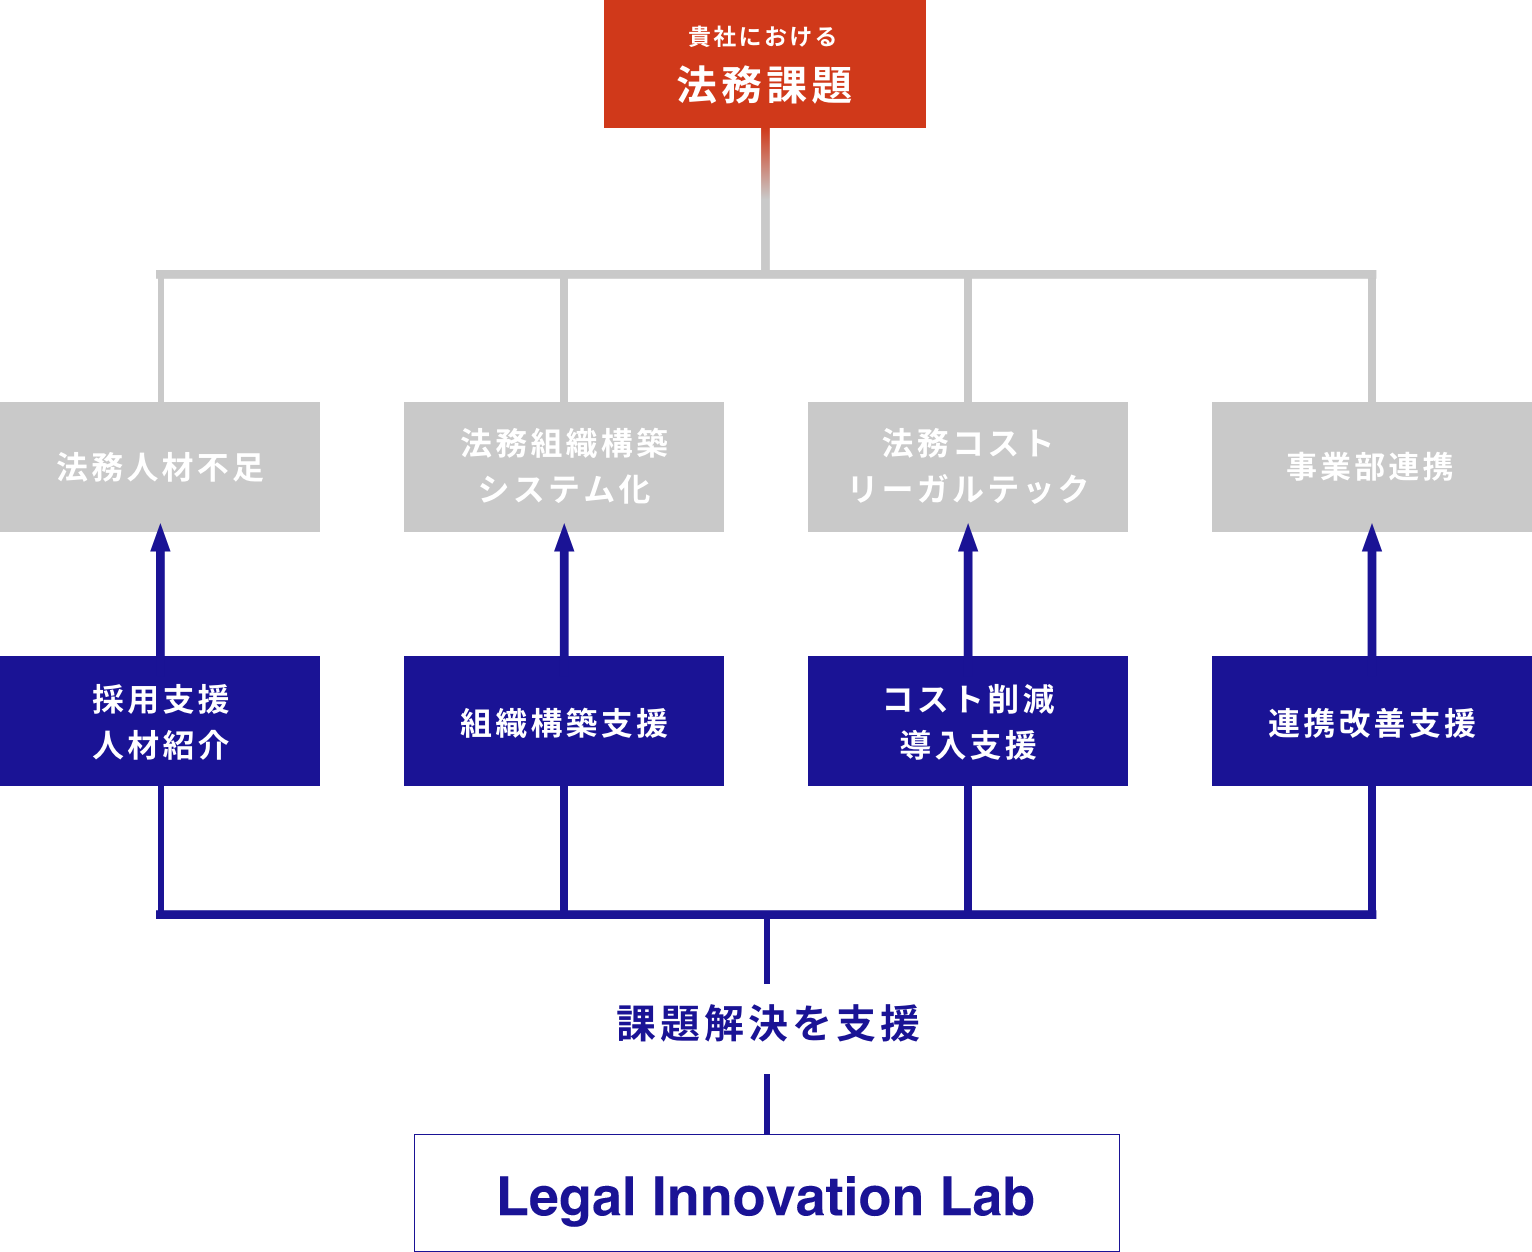 貴社における法務課題をリーガルイノベーションラボが支援いたします